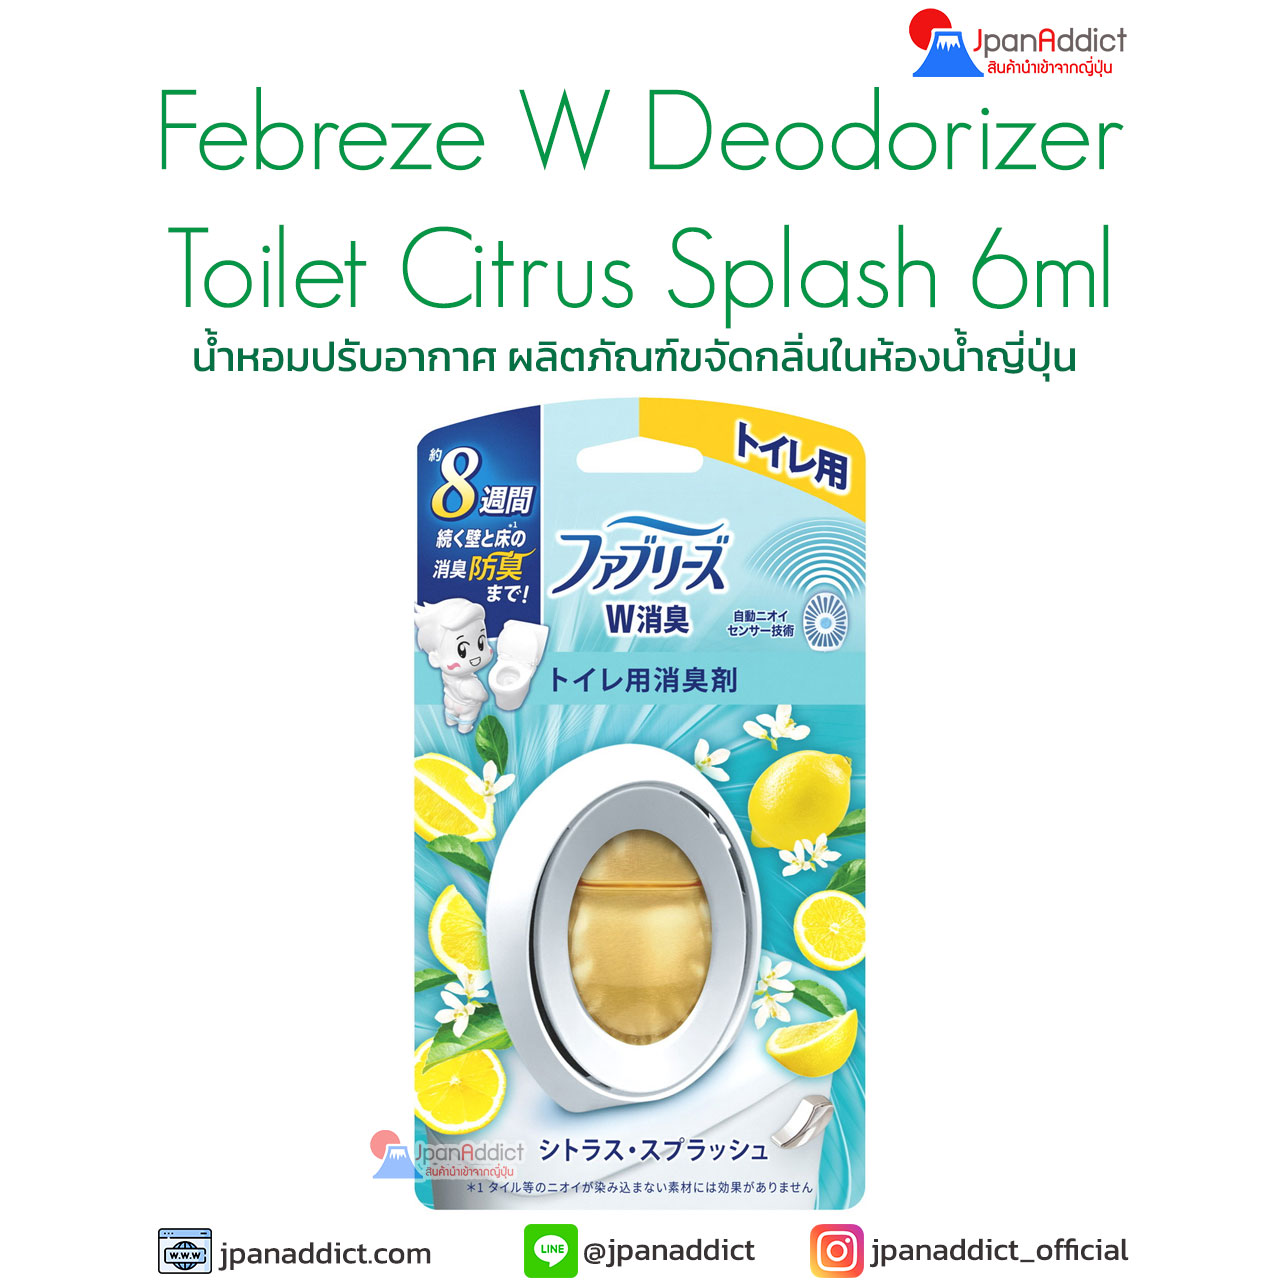 Febreze W Deodorant Toilet Citrus Splash 6ml